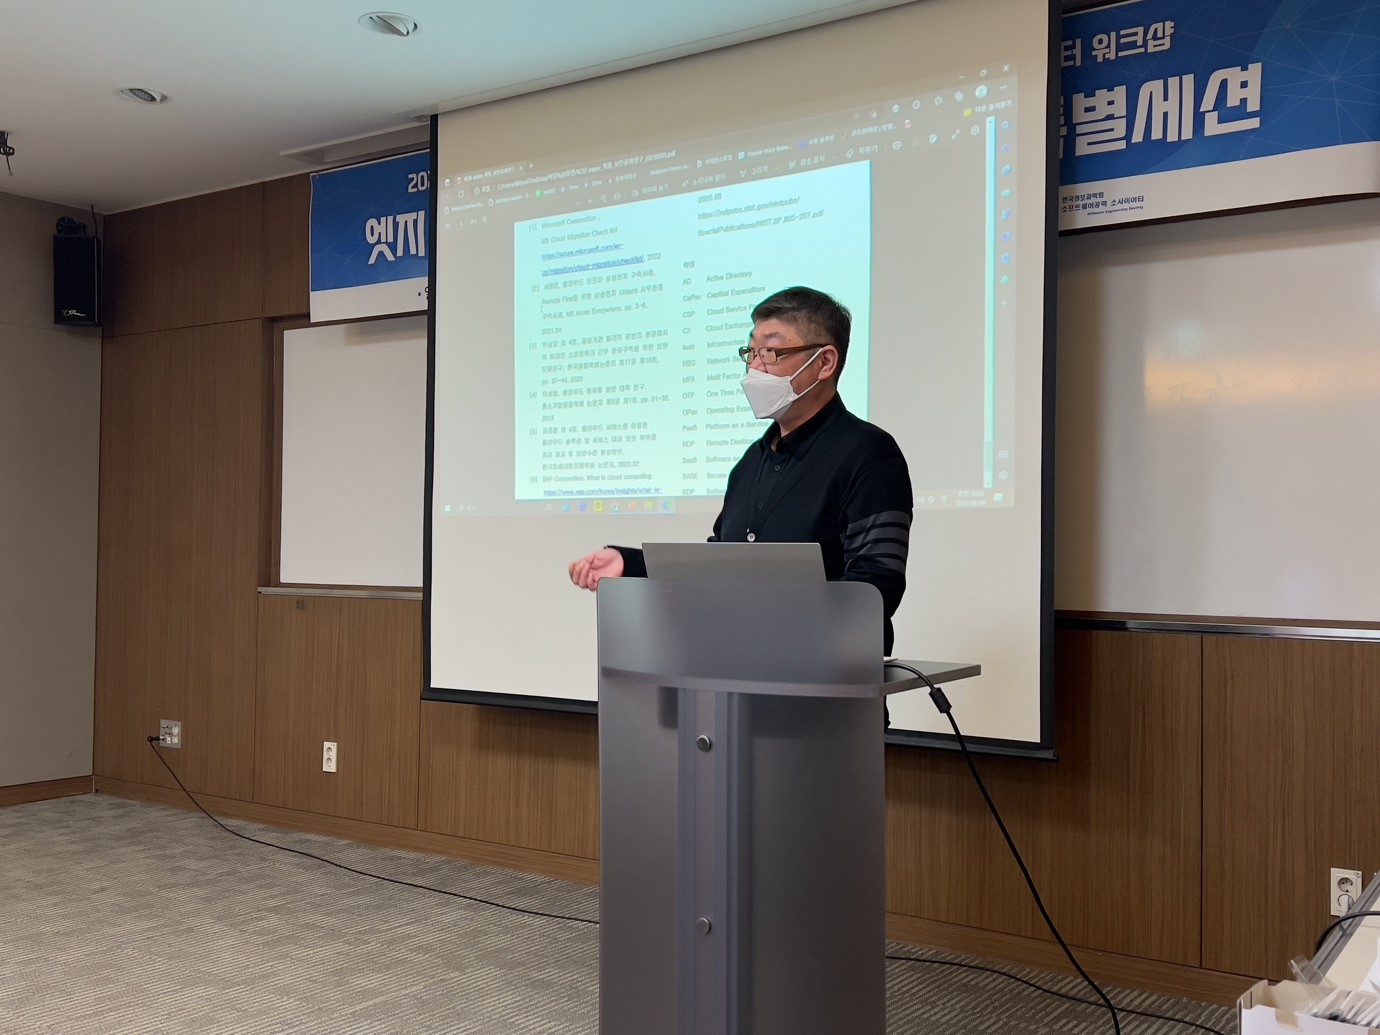 이테크시스템, 한국소프트웨어공학학술대회서 연구 논문 발표